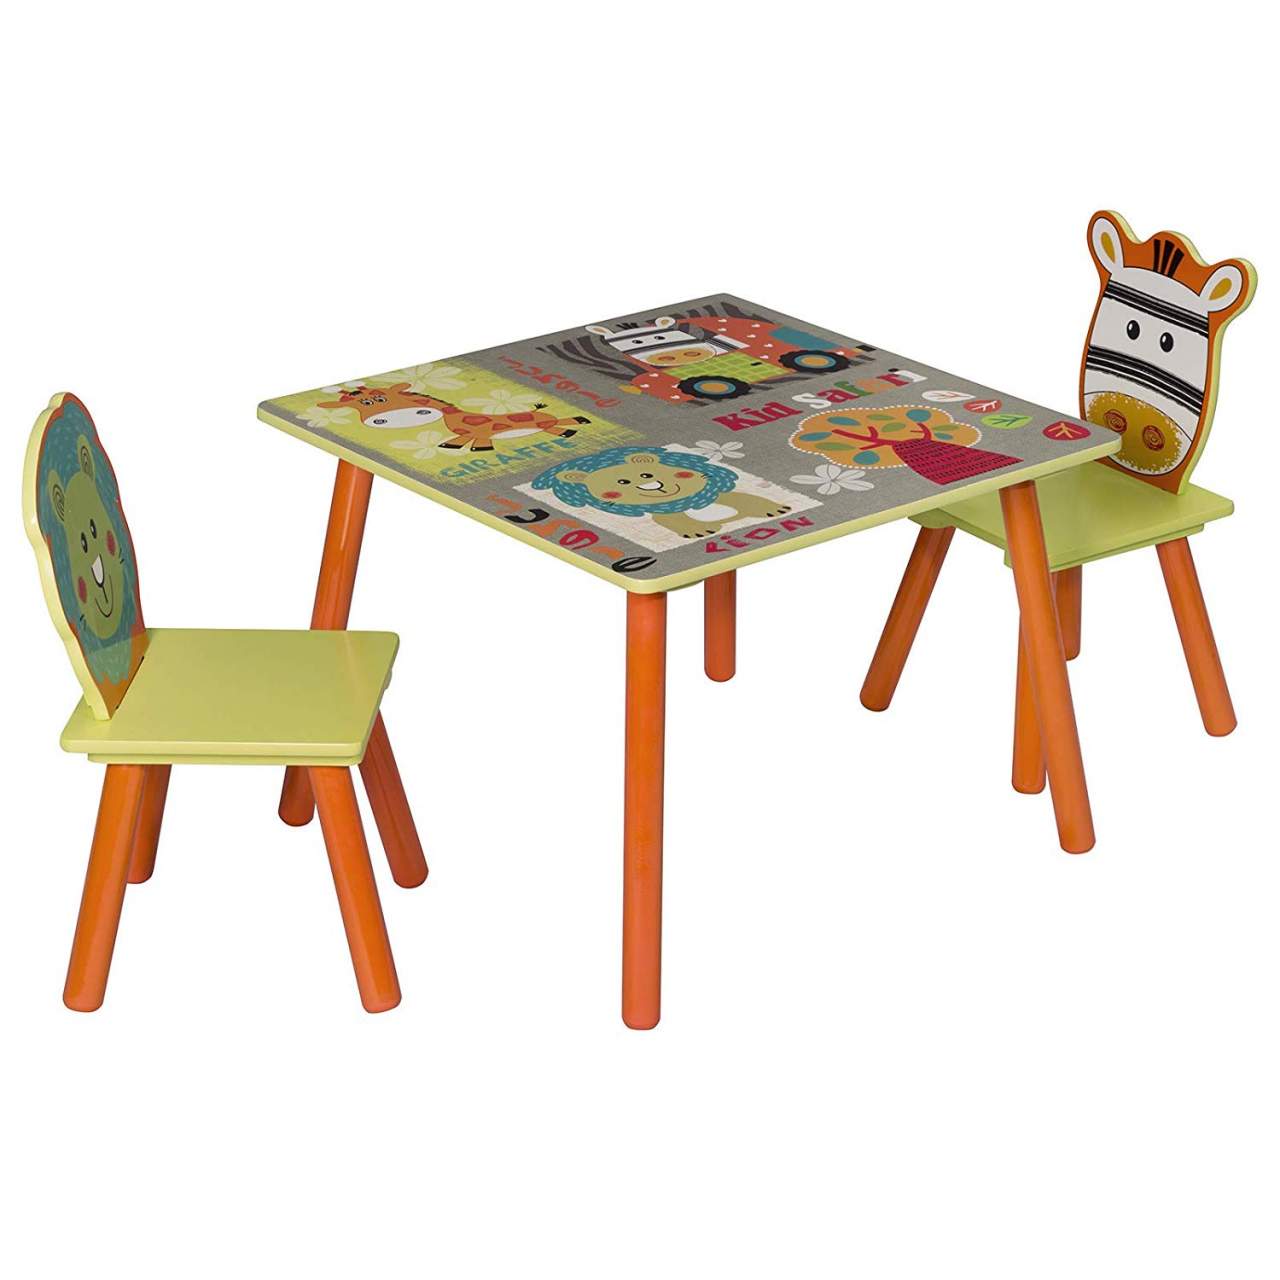 Kindersitzgruppe Kindertisch mit 2 Stühlen Kindermöbel Kinder Tisch Stuhl Holz 